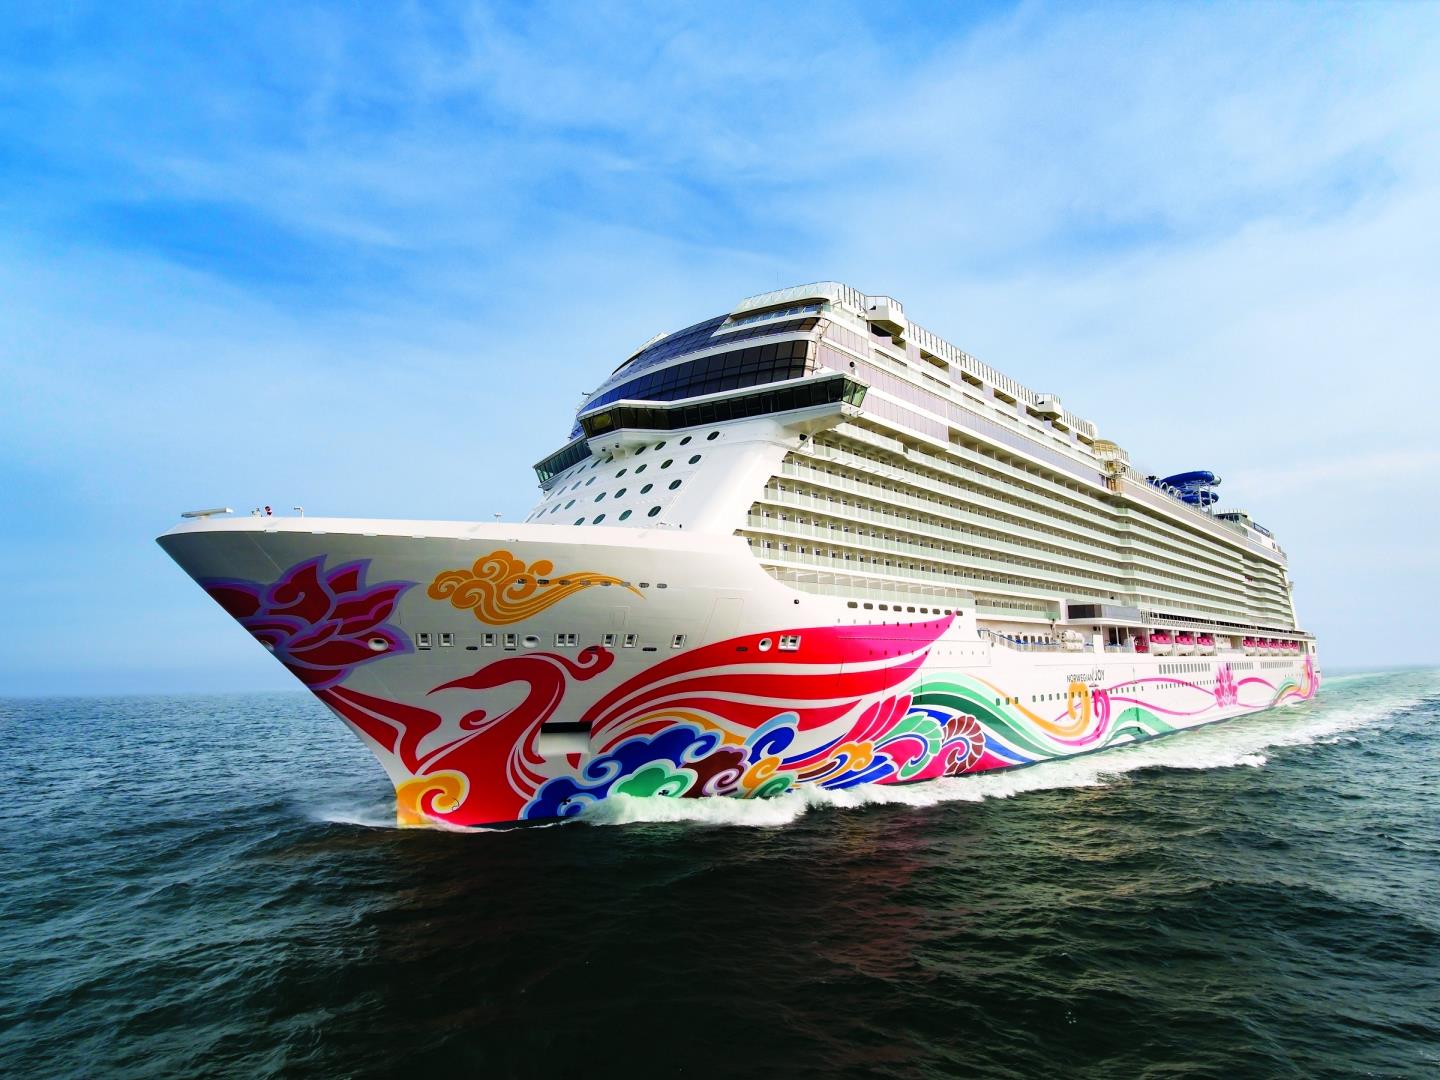 4-day Cruise to Bermuda from New York, New York on Norwegian Joy